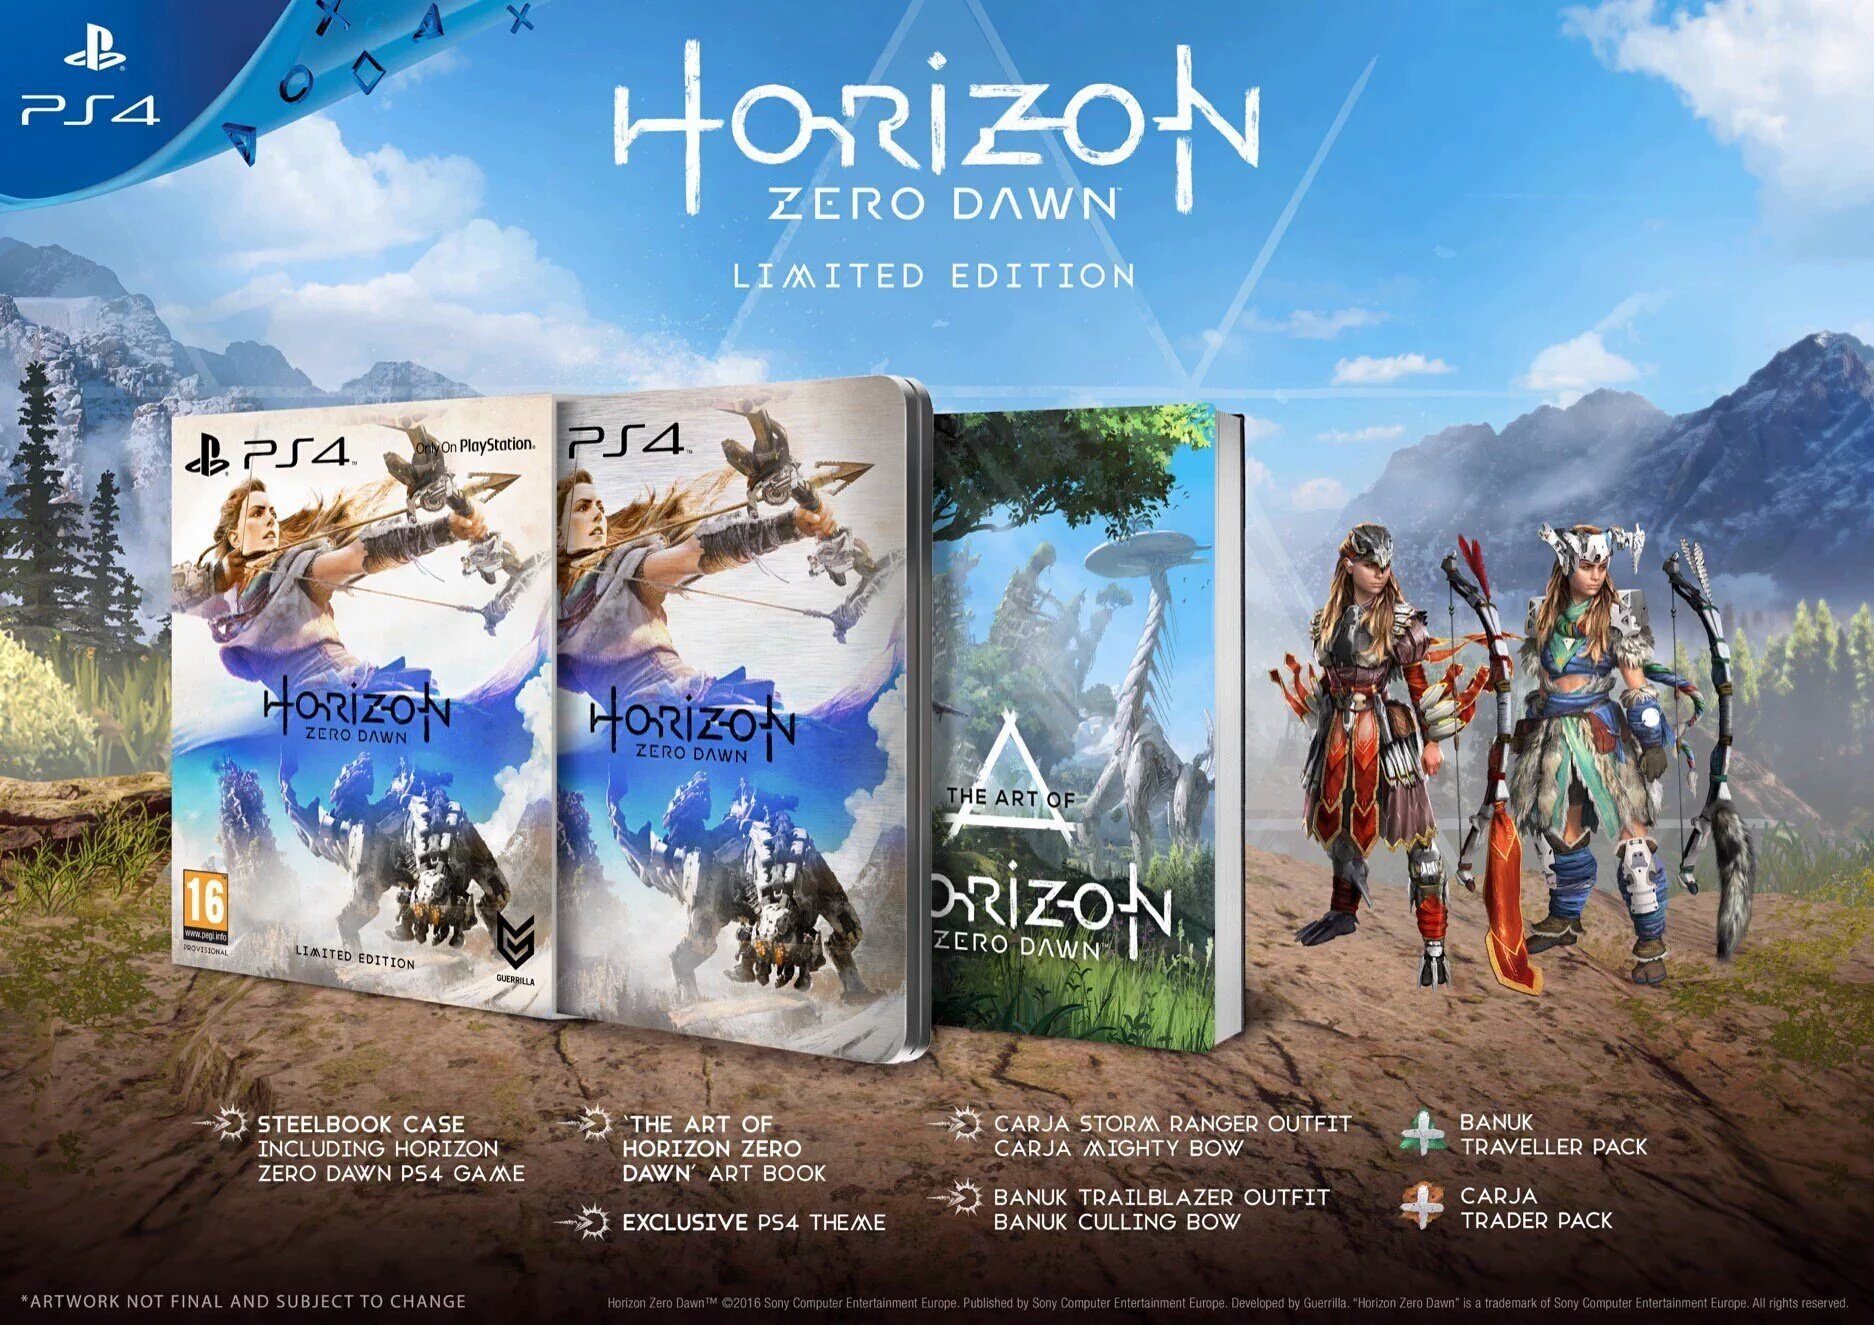 Ps4 Exclusive Horizon Zero Dawn S Box Art Is Predictably Beautiful Push Square